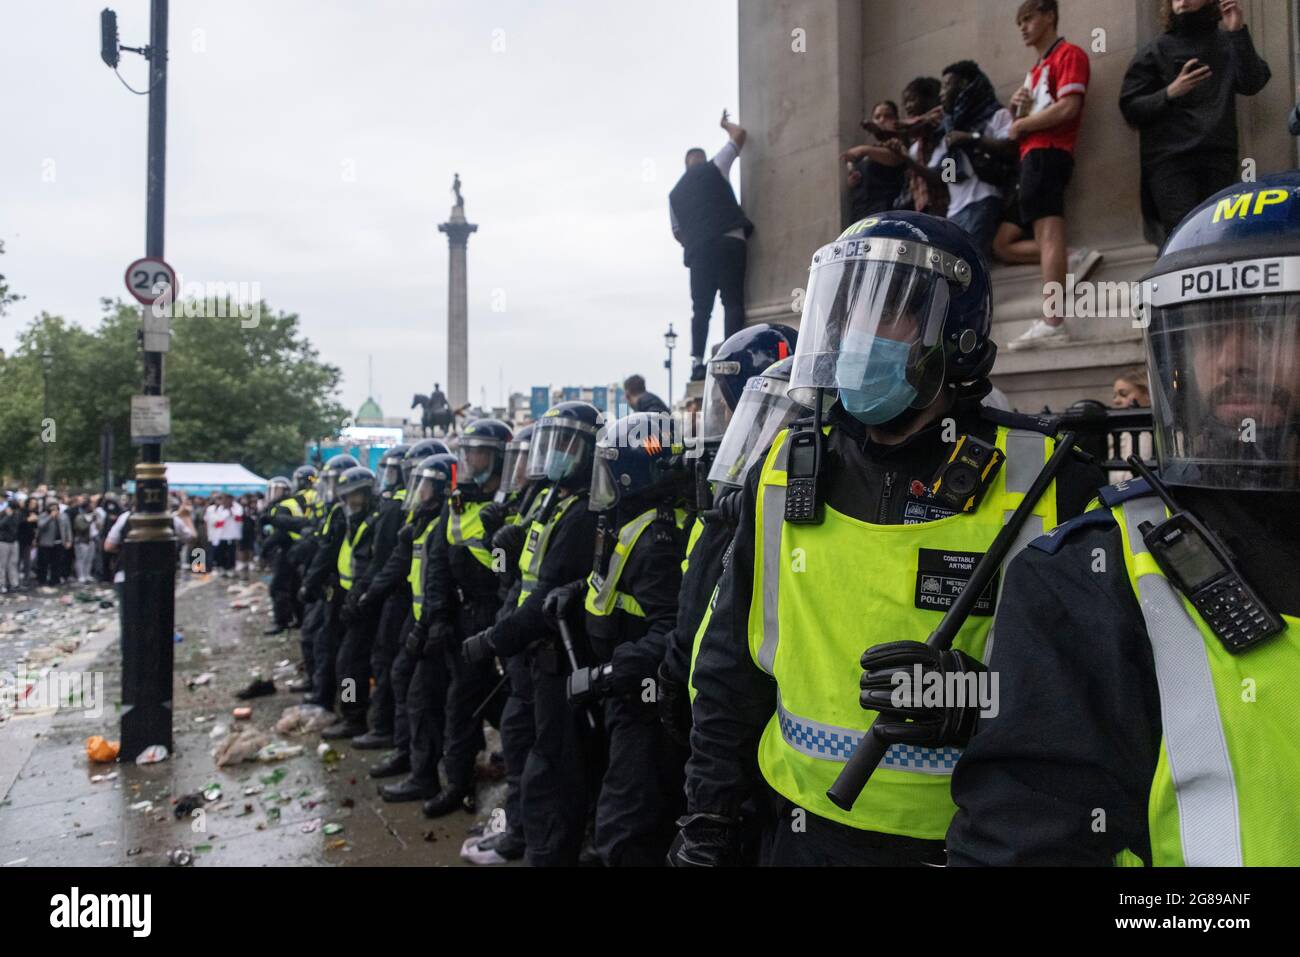 La polizia di Riot si scontra con i tifosi durante la finale inglese contro Italia Euro 2020, Trafalgar Square, Londra, 11 luglio 2021 Foto Stock